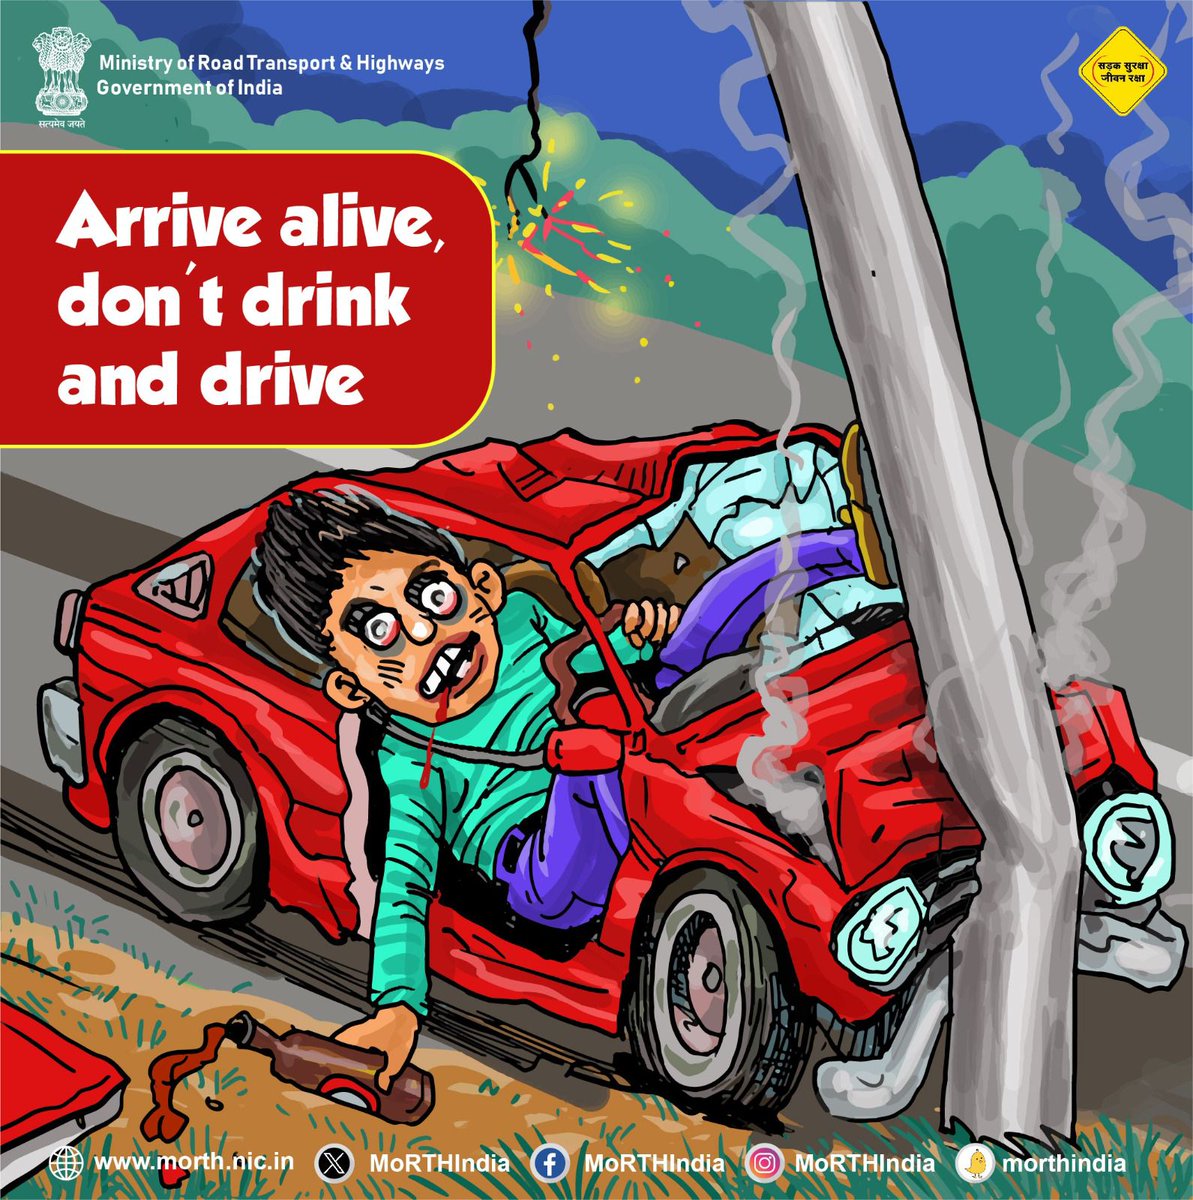 Be alert on road #SadakSurakshaJeevanRaksha